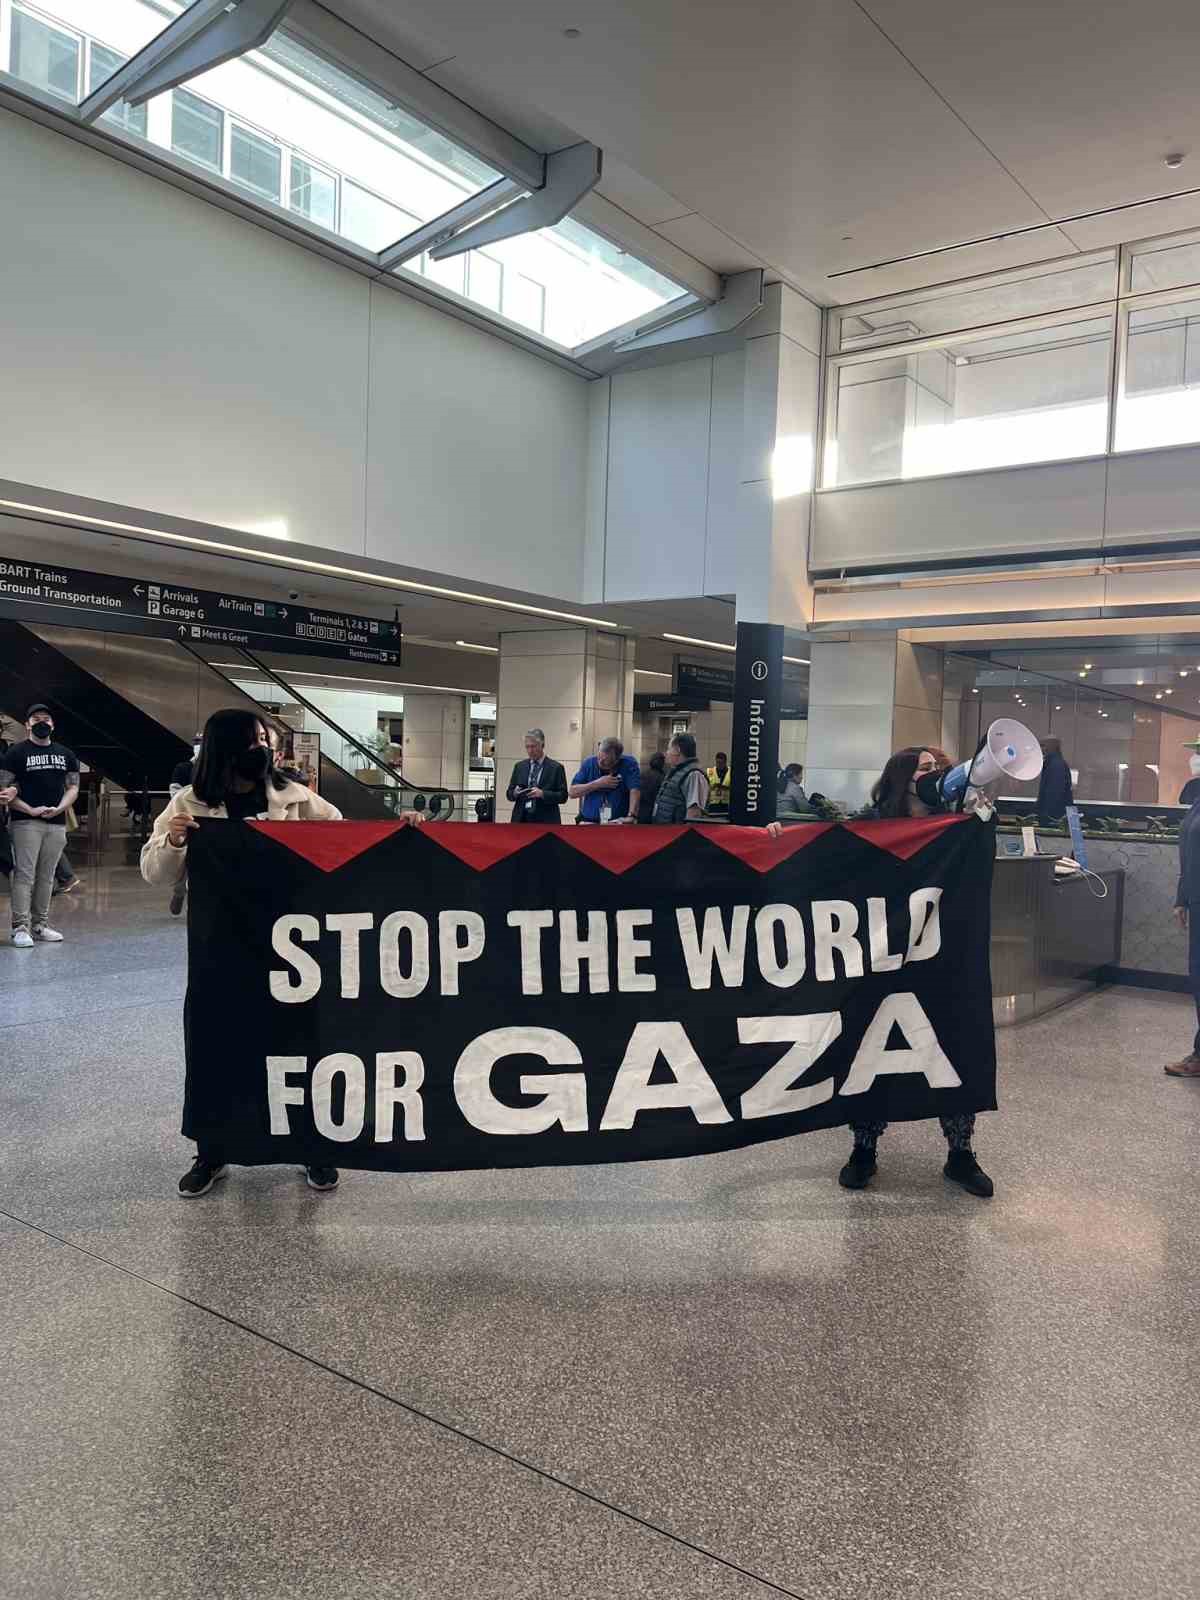 ABD’deki San Francisco Uluslararası Havalimanı’nda Gazze protestosu
